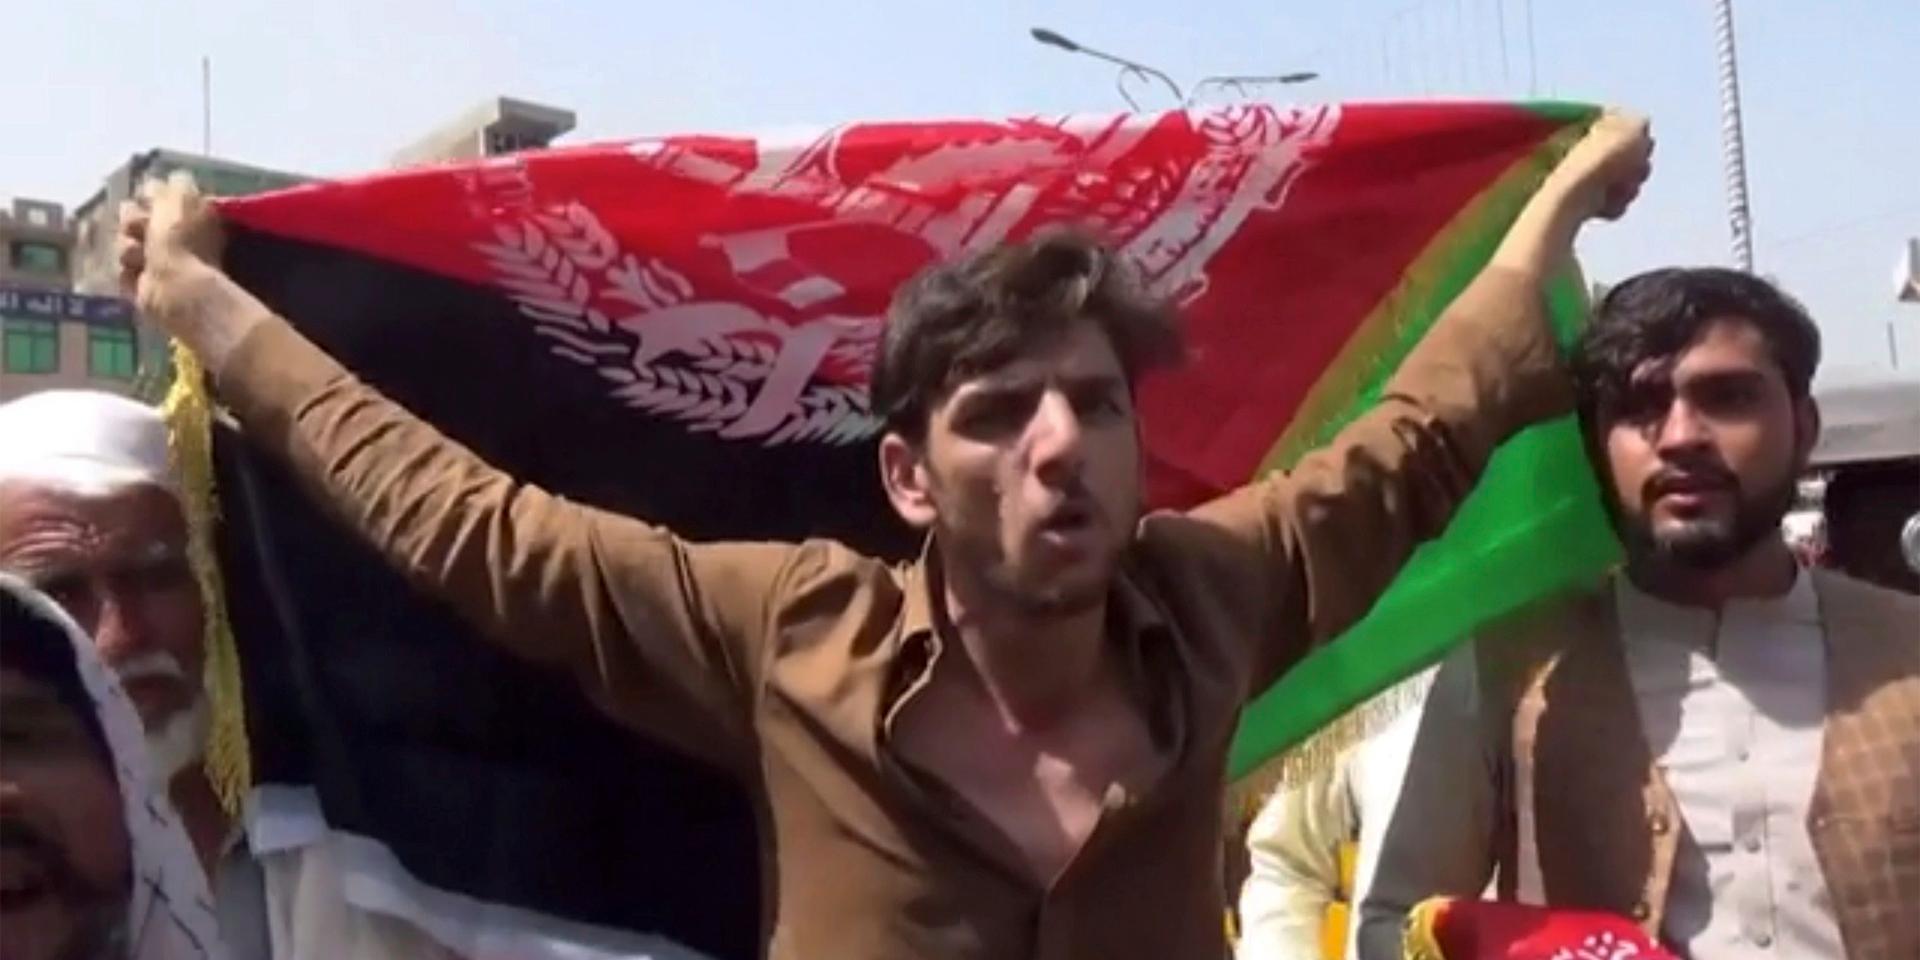 En man håller ut en flagga under protesterna mot talibanernas i Jalalabad på onsdagen. Minst tre människor dog vid skottlossningen, enligt obekräftad uppgift.